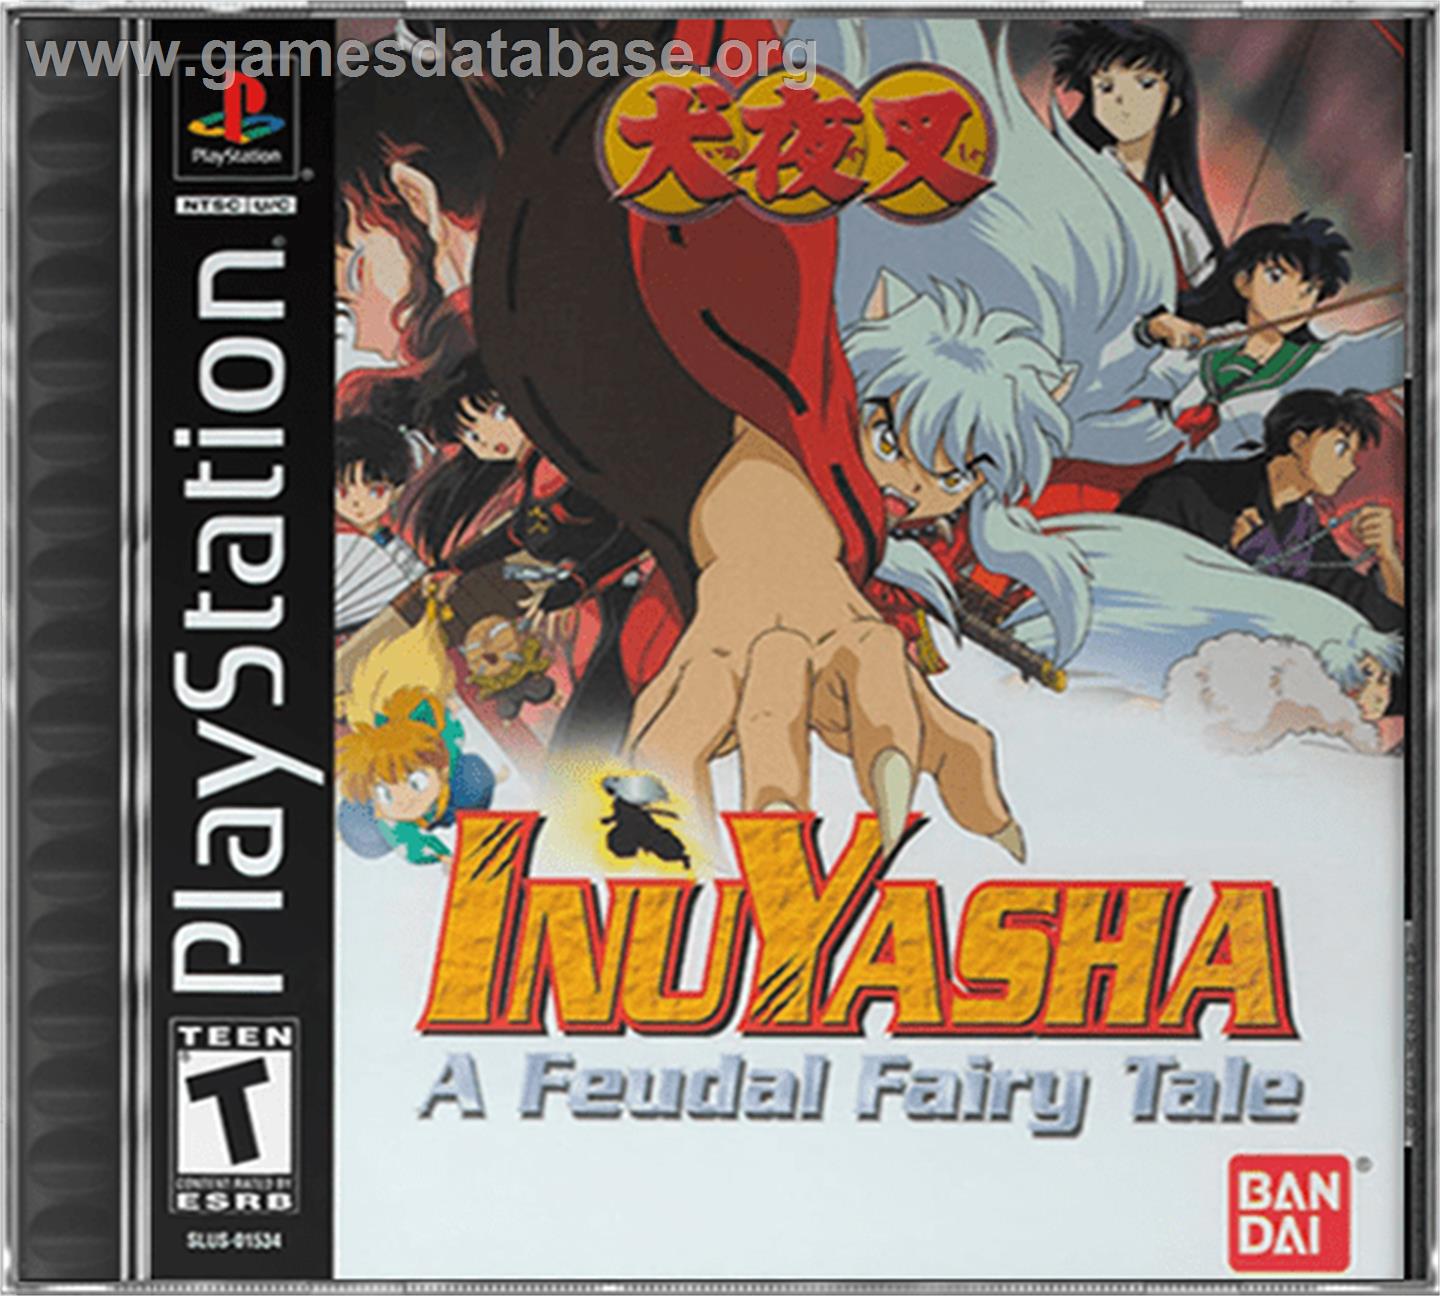 InuYasha: A Feudal Fairy Tale - Sony Playstation - Artwork - Box